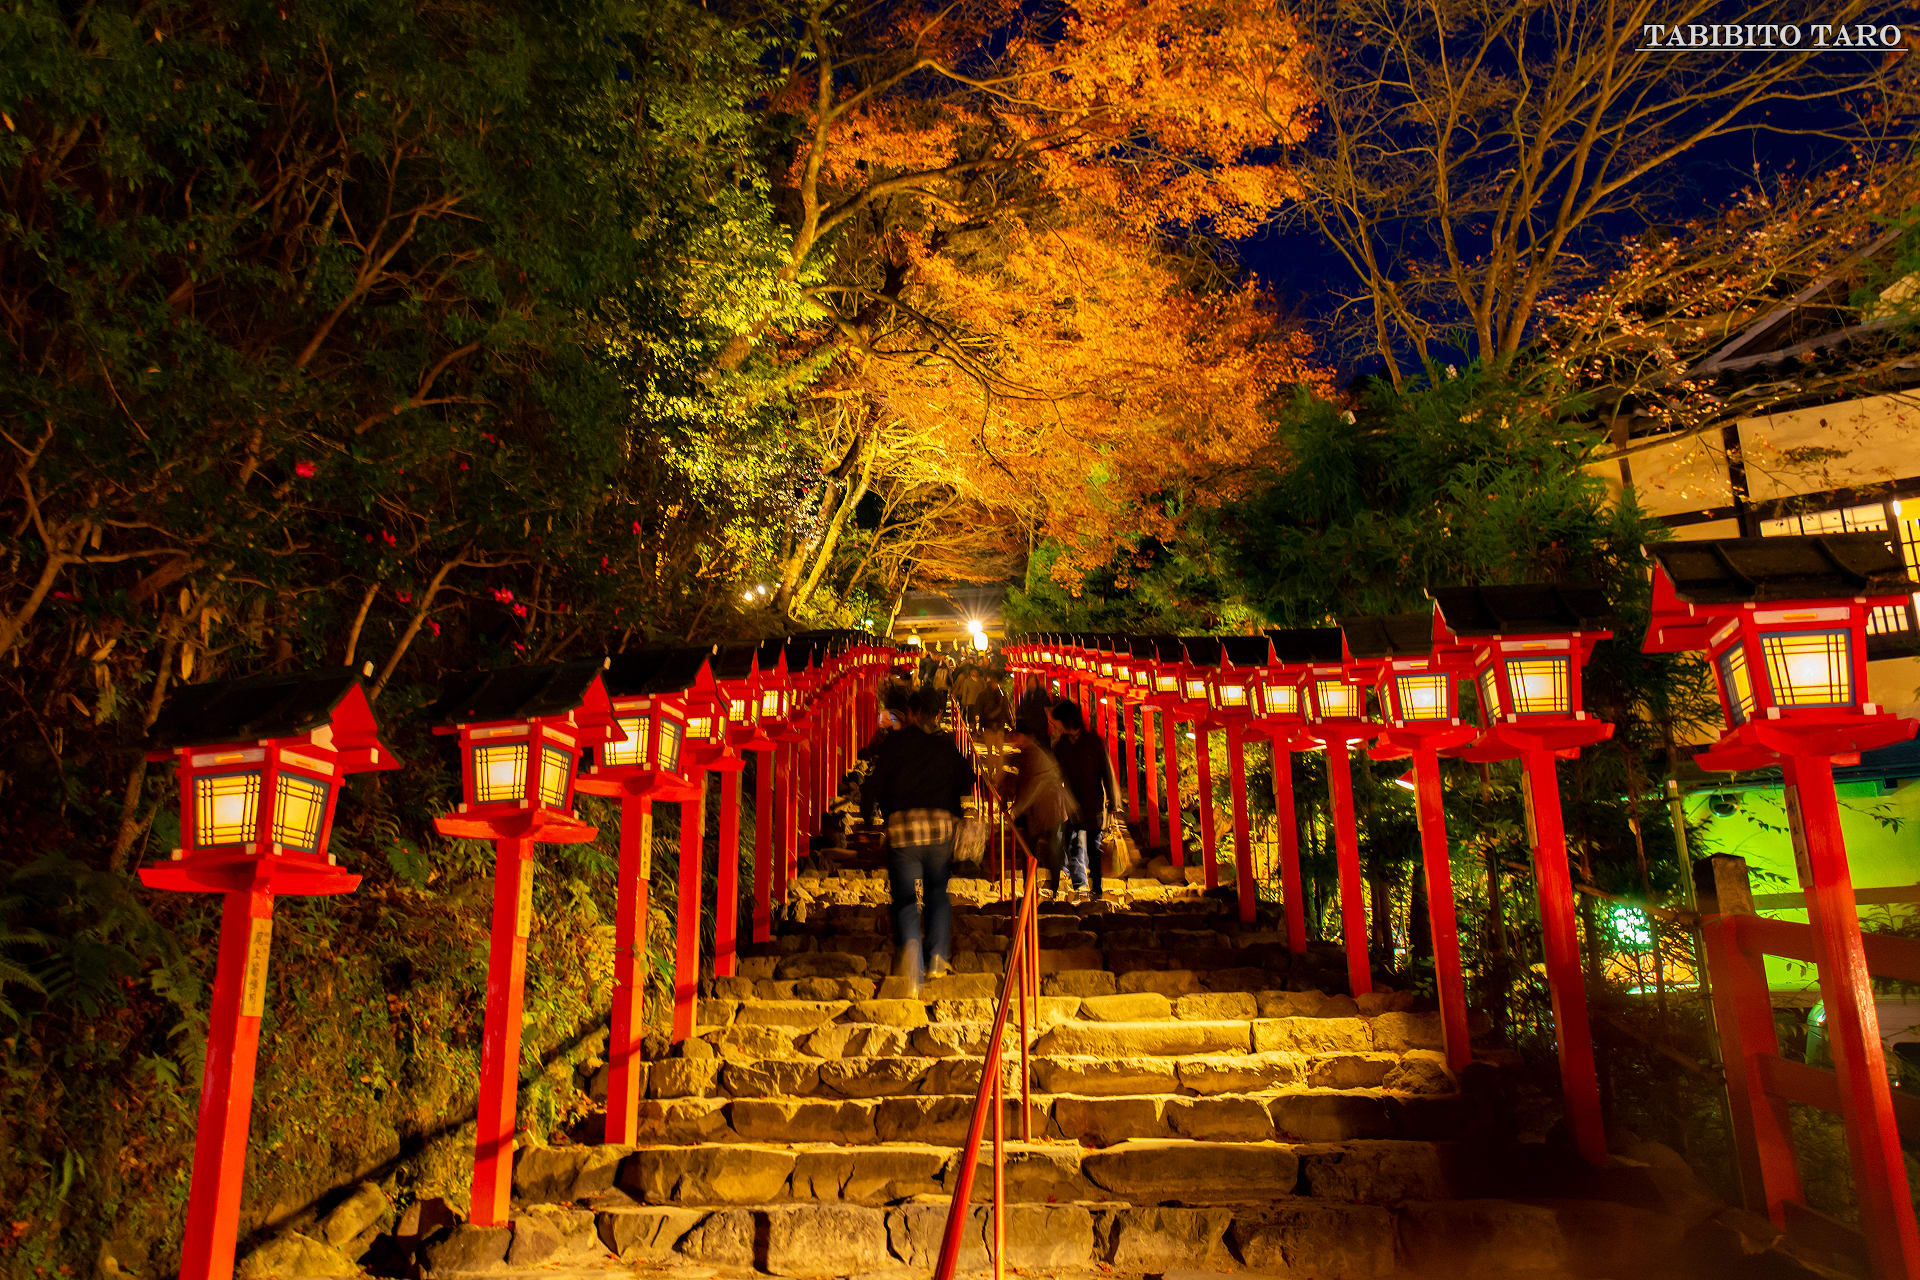 夜景写真 Vol 2 京都市 貴船神社 旅人太郎の写真館